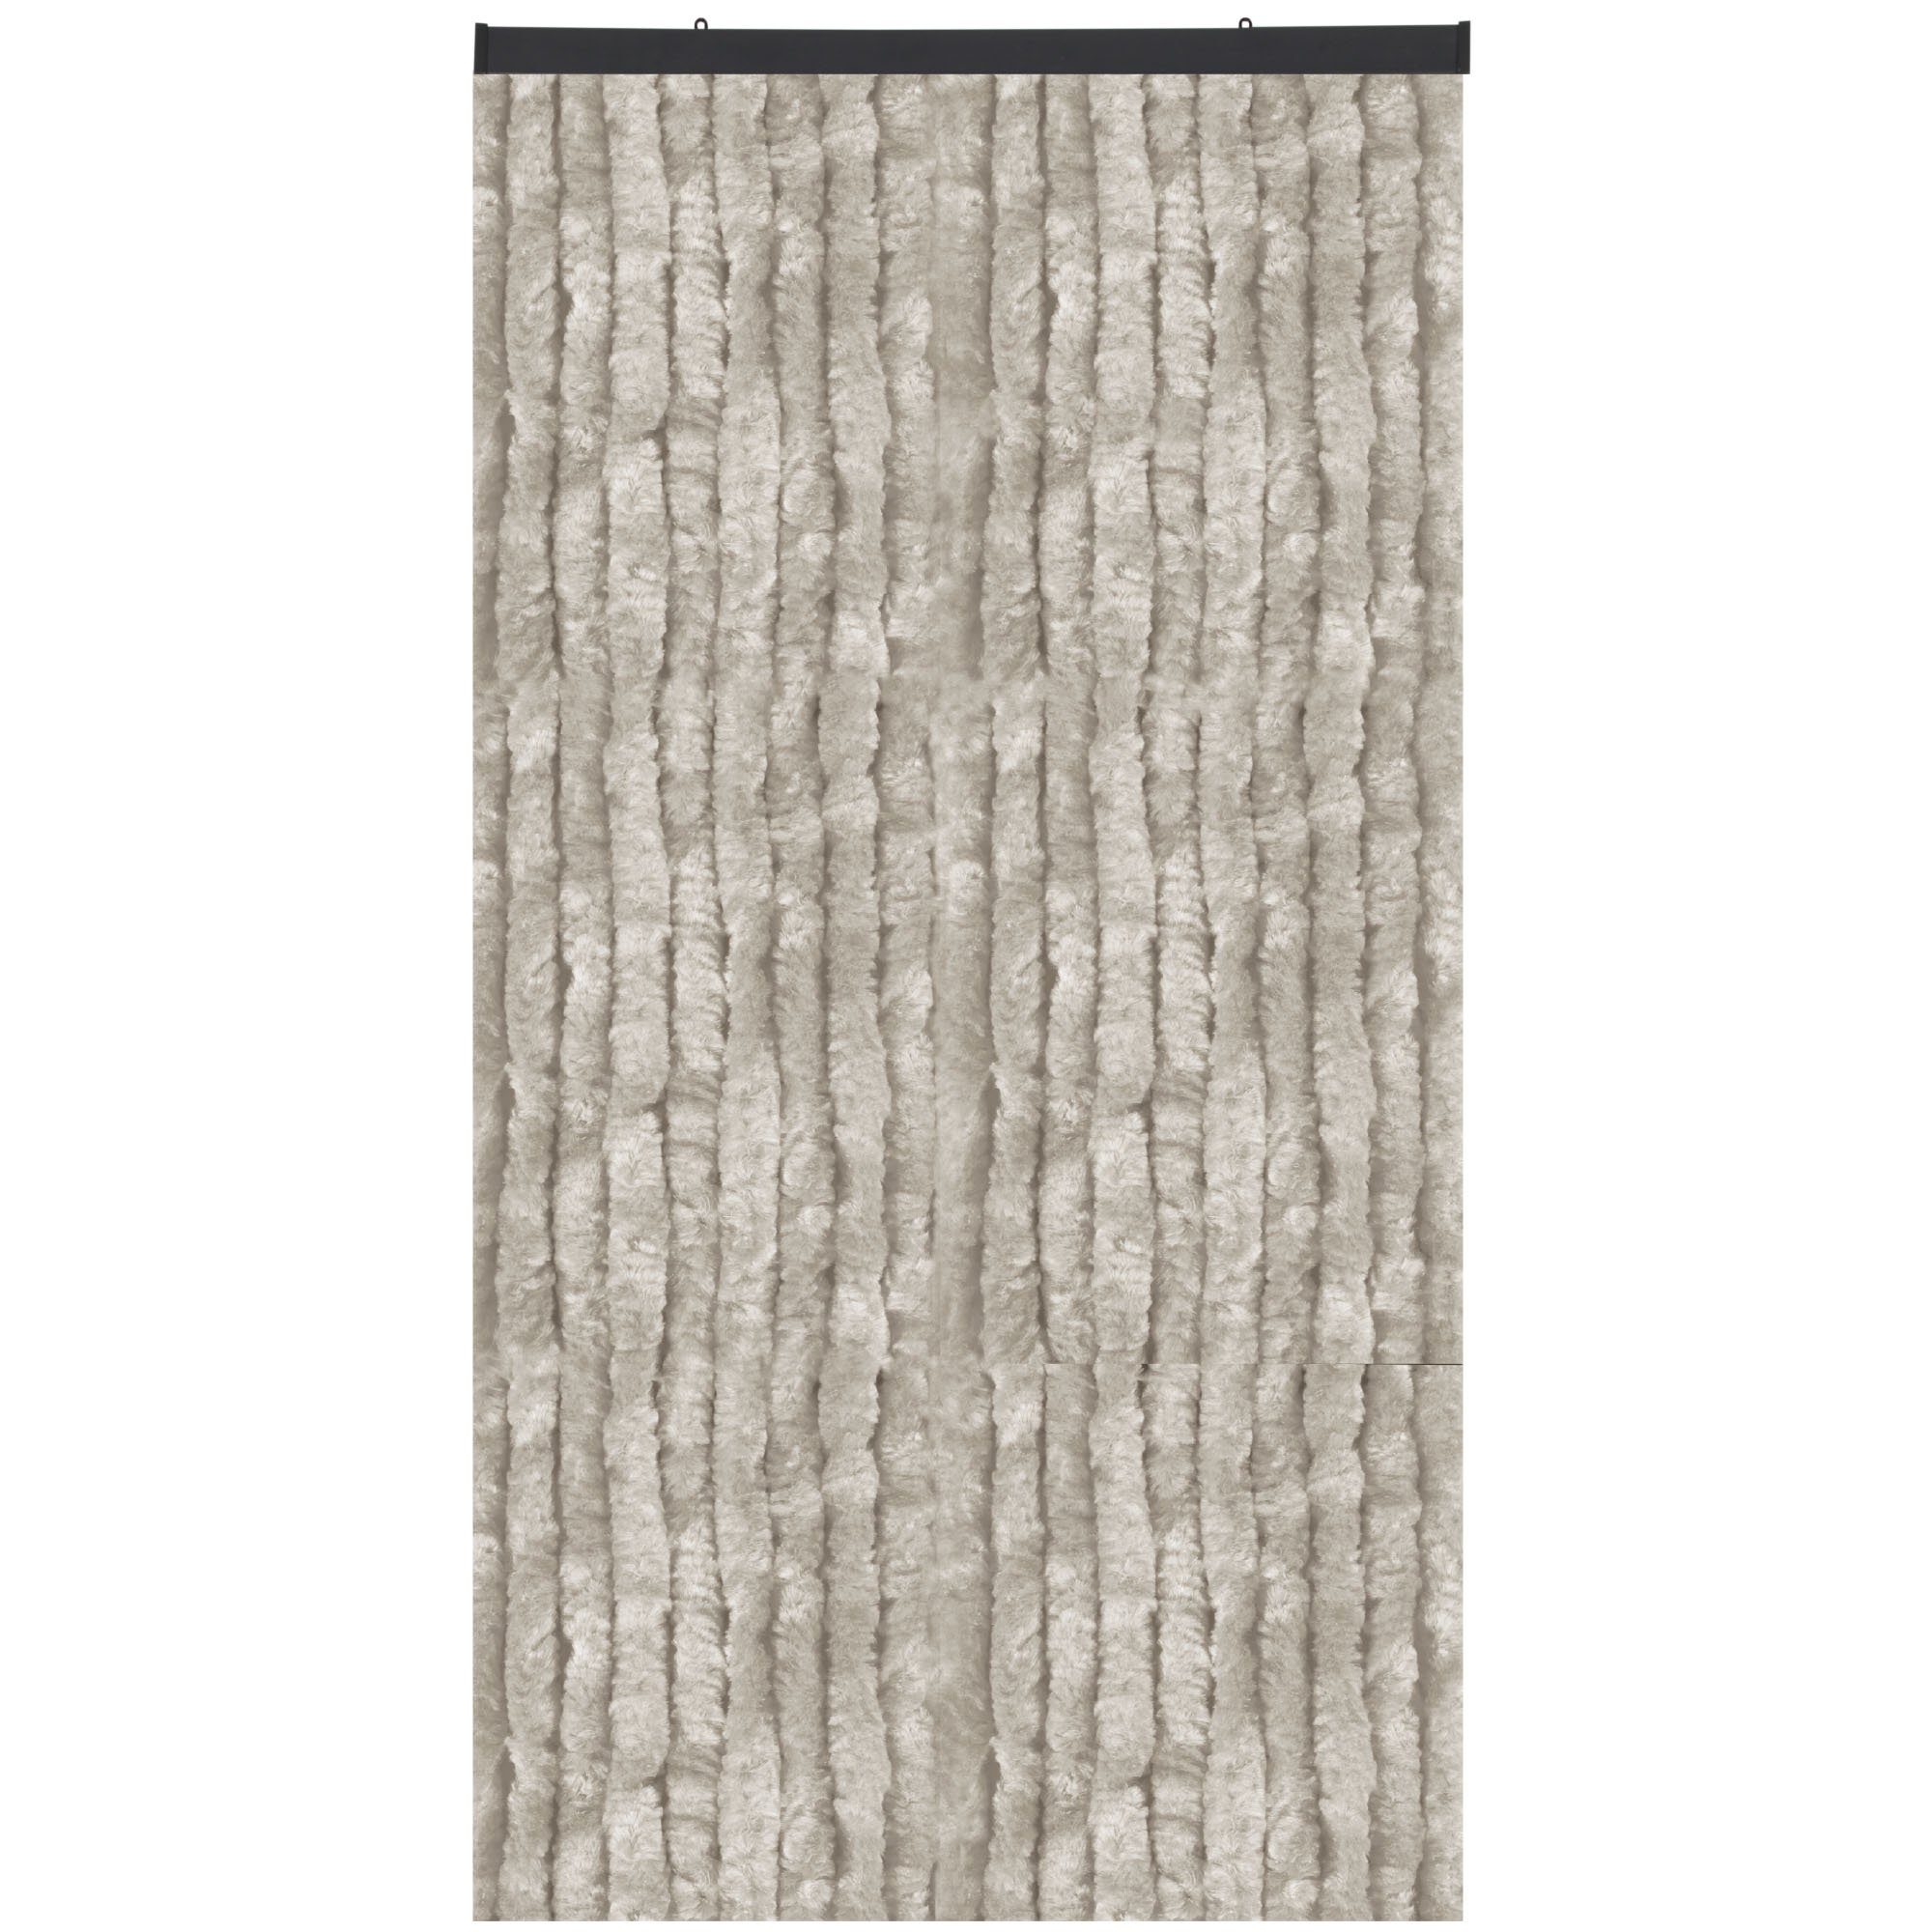 Türvorhang Flauschi, Arsvita, Ösen (1 St), Flauschvorhang 160x185 cm in Unistreifen grau, viele Farben